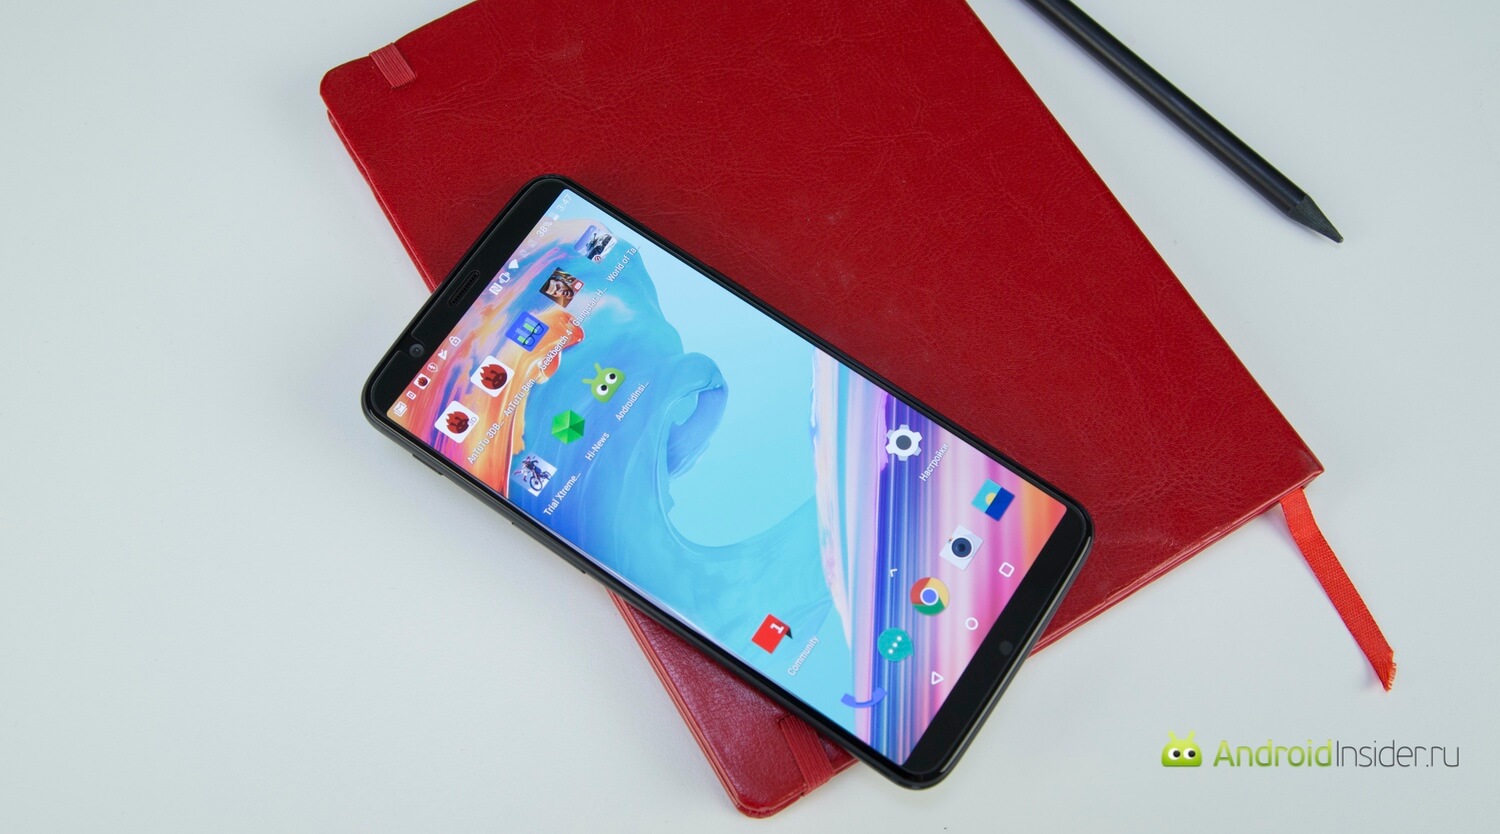 Видеообзор: OnePlus 5T — почти отличный смартфон! Пара слов об экране. Фото.